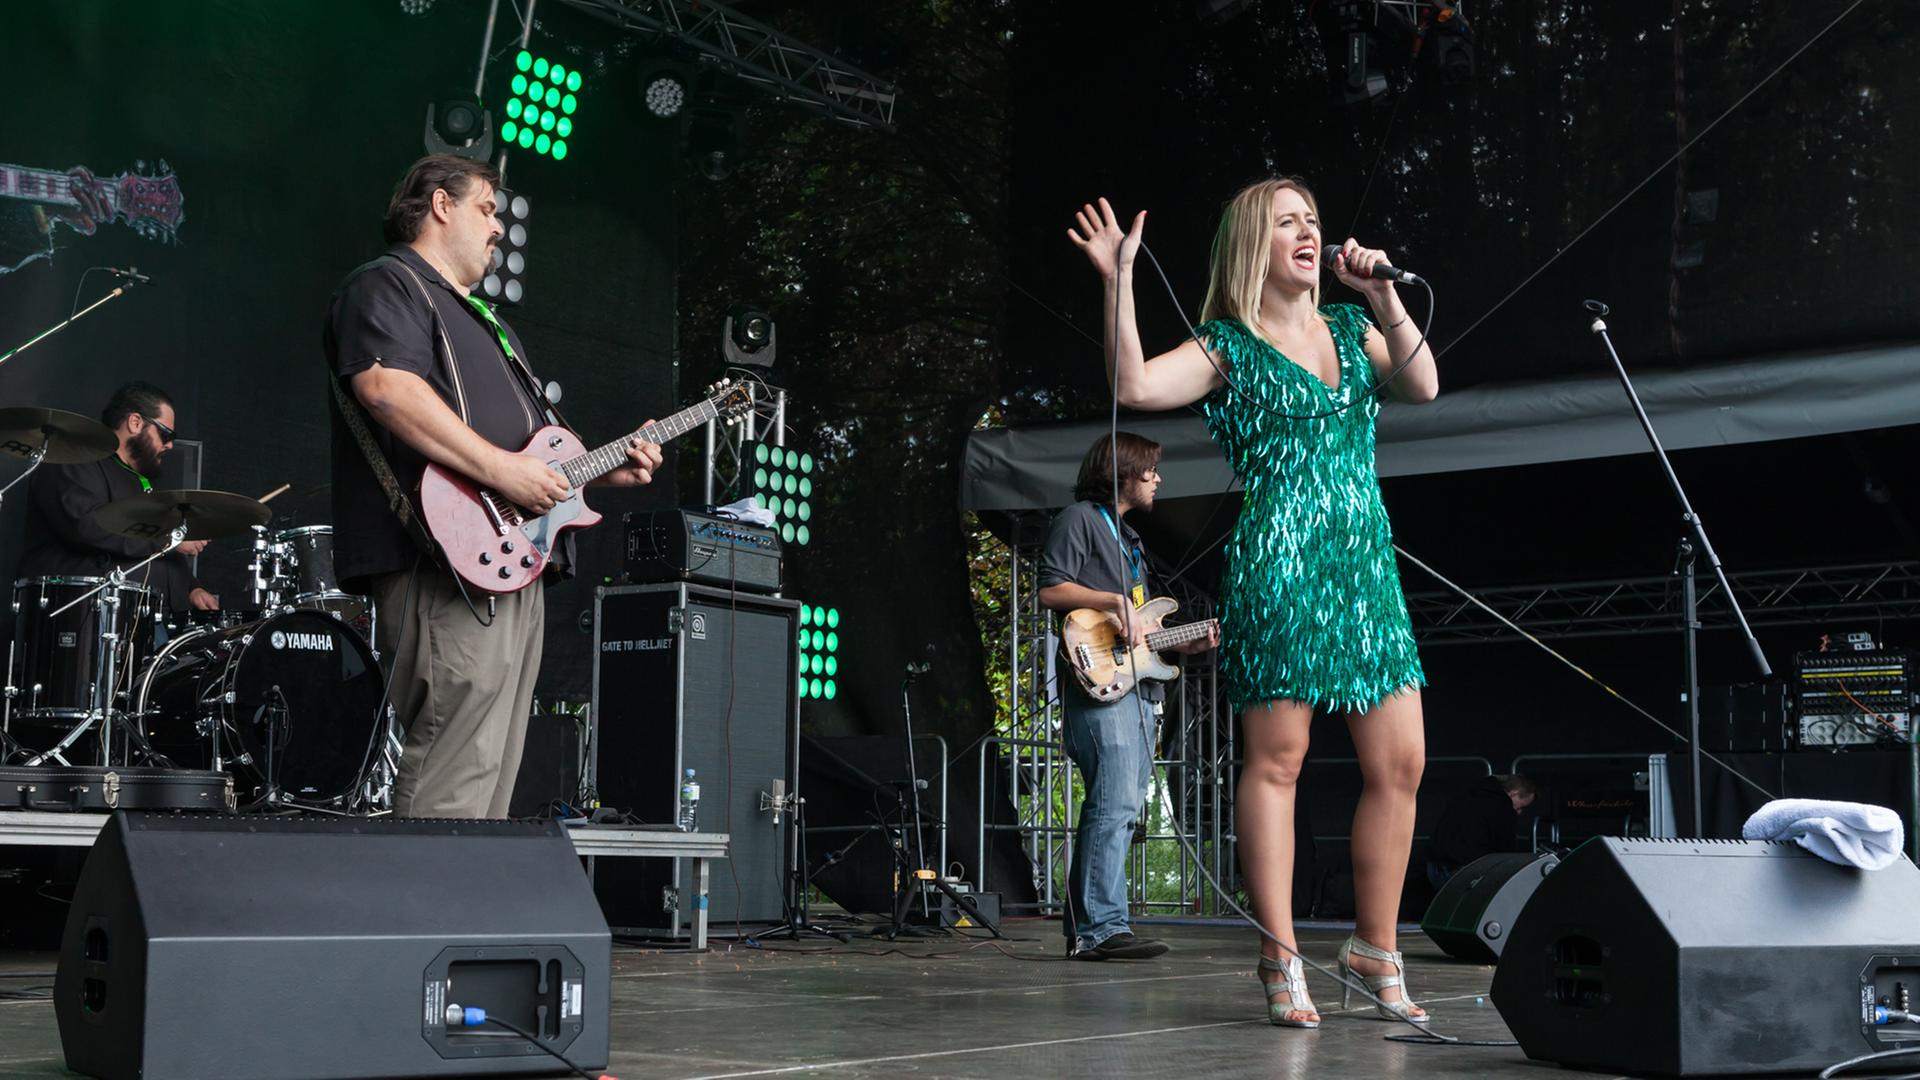 Eine blonde Frau steht in einem grünen Paillettenkleid auf der Bühne und singt, im Hintergrund spielt ihre Band.